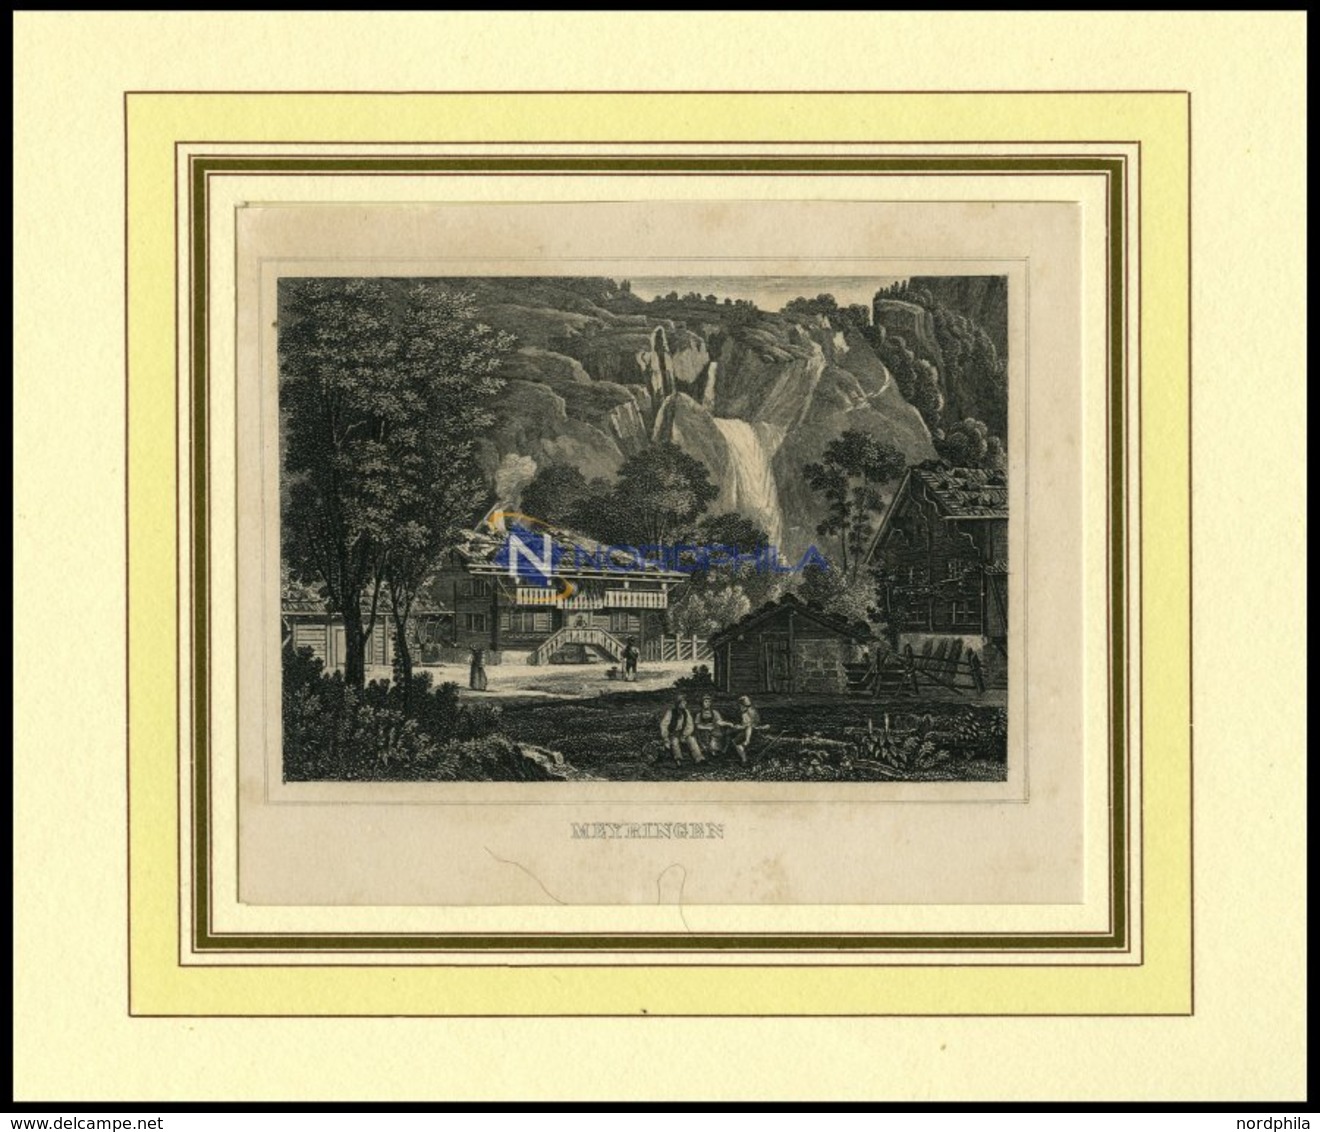 MAYRINGEN/KANTON BERN, Gesamtansicht, Stahlstich Um 1840 - Lithographies